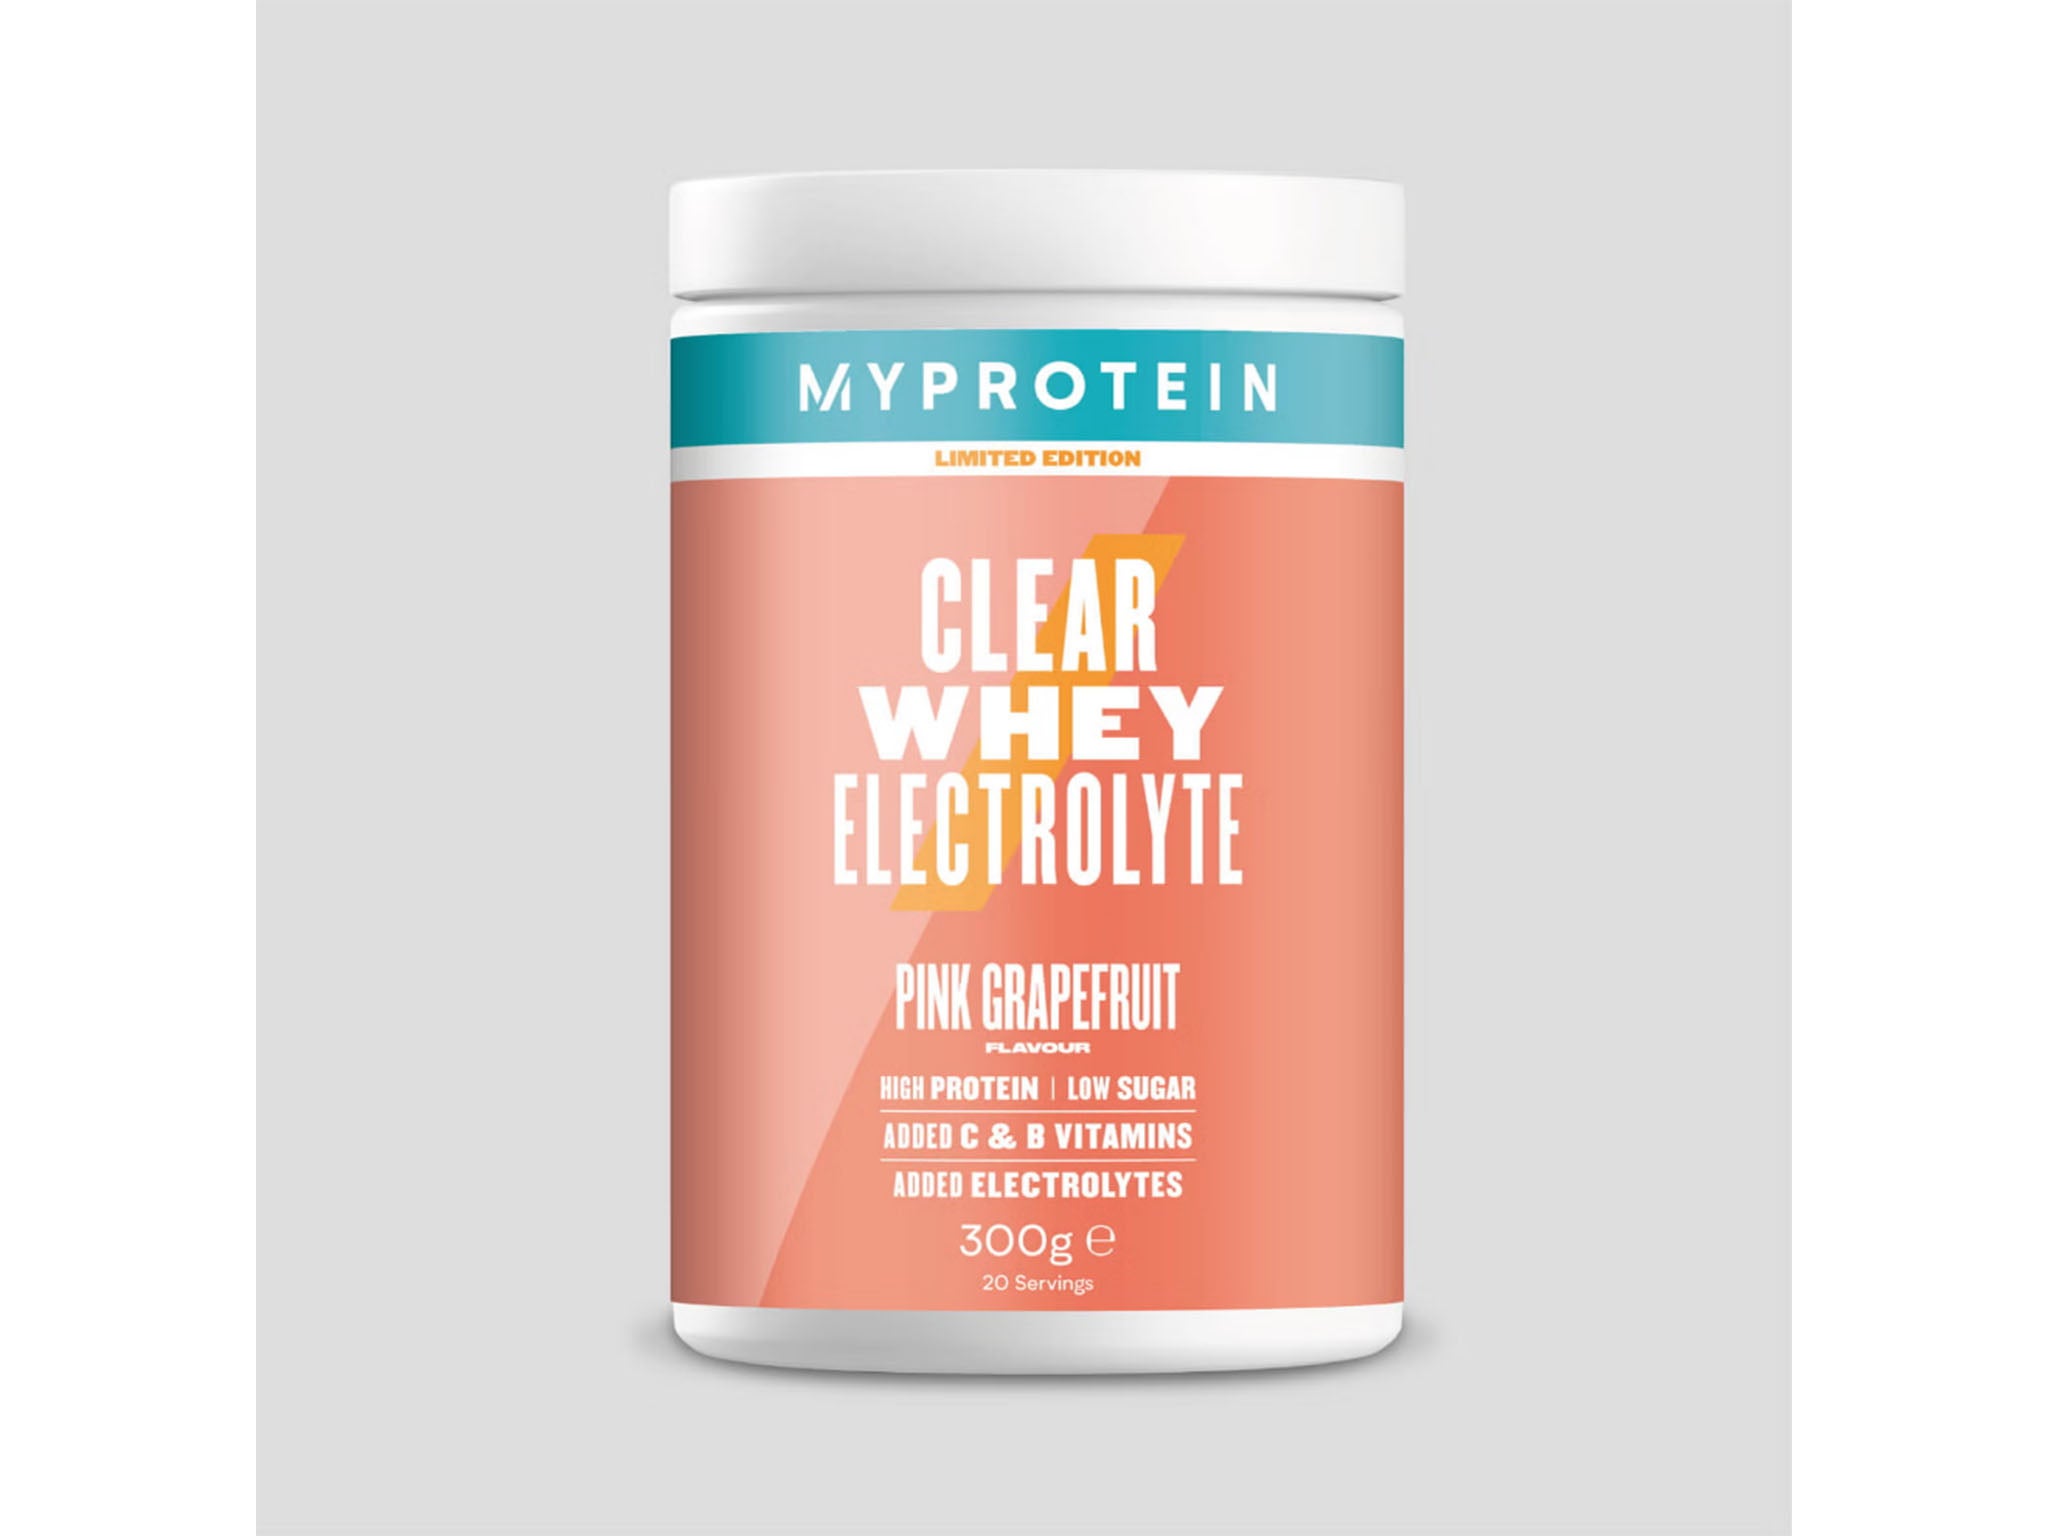 Myprotein clear whey electrolyte.jpg